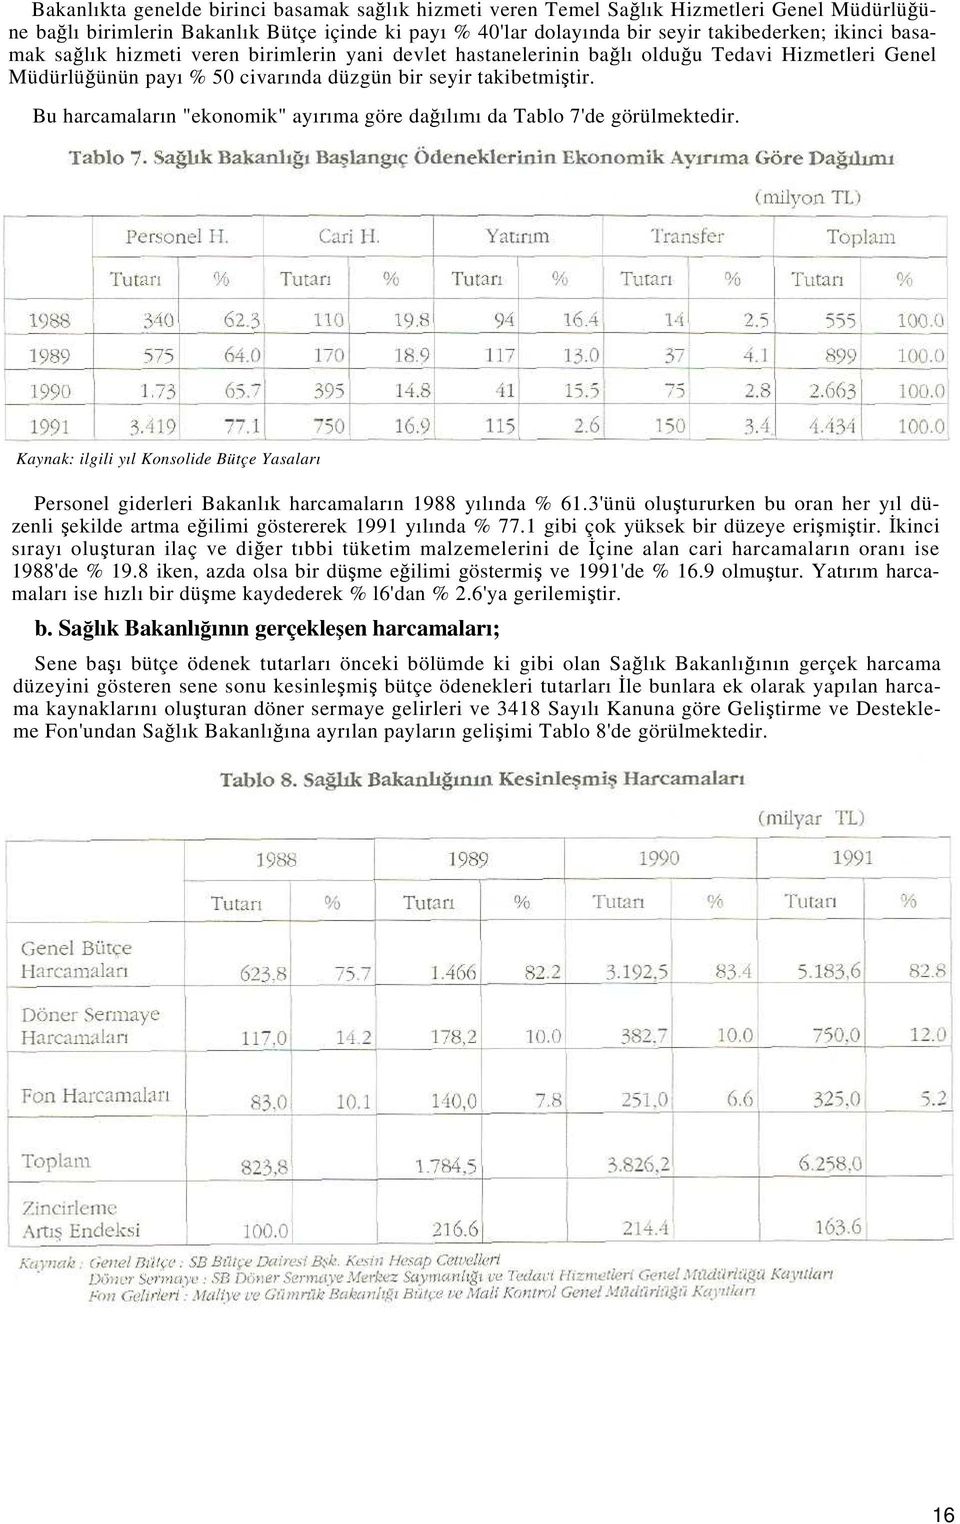 Bu harcamaların "ekonomik" ayırıma göre dağılımı da Tablo 7'de görülmektedir. Kaynak: ilgili yıl Konsolide Bütçe Yasaları Personel giderleri Bakanlık harcamaların 1988 yılında % 61.